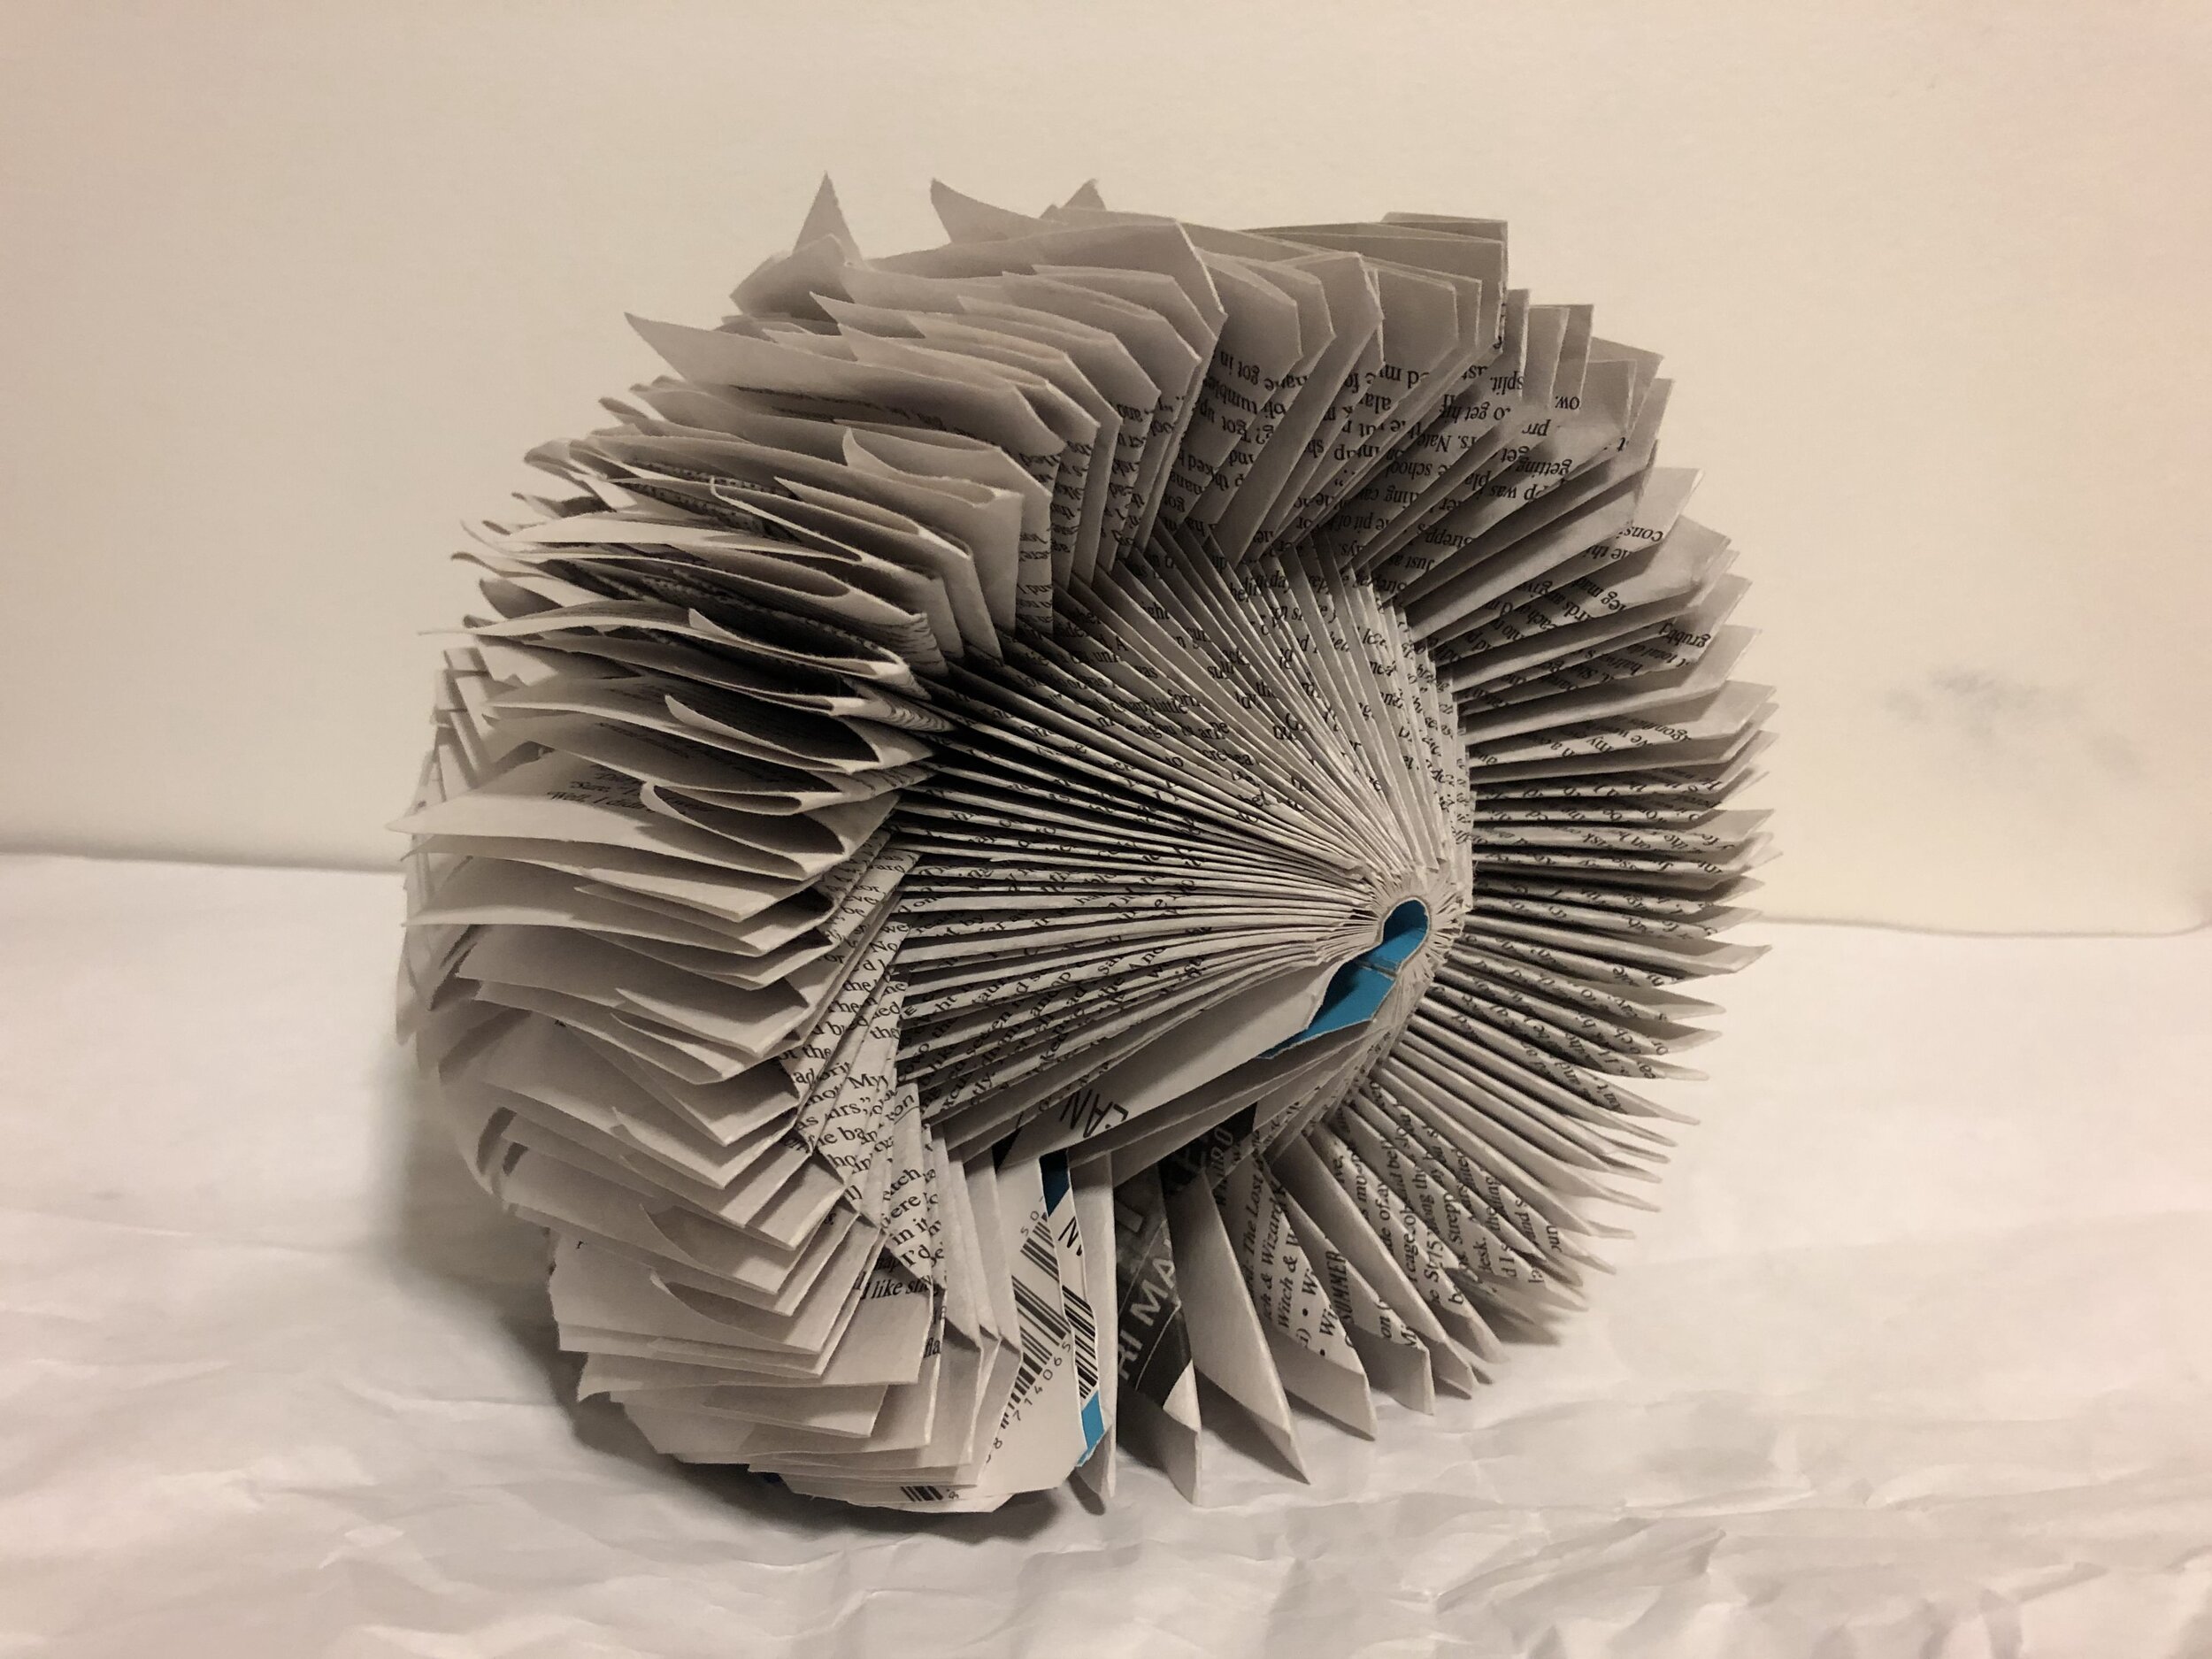  Katherine Keller, Book Volume Project, Altered book. University of New Haven, Spring 2018, 3D Design.  